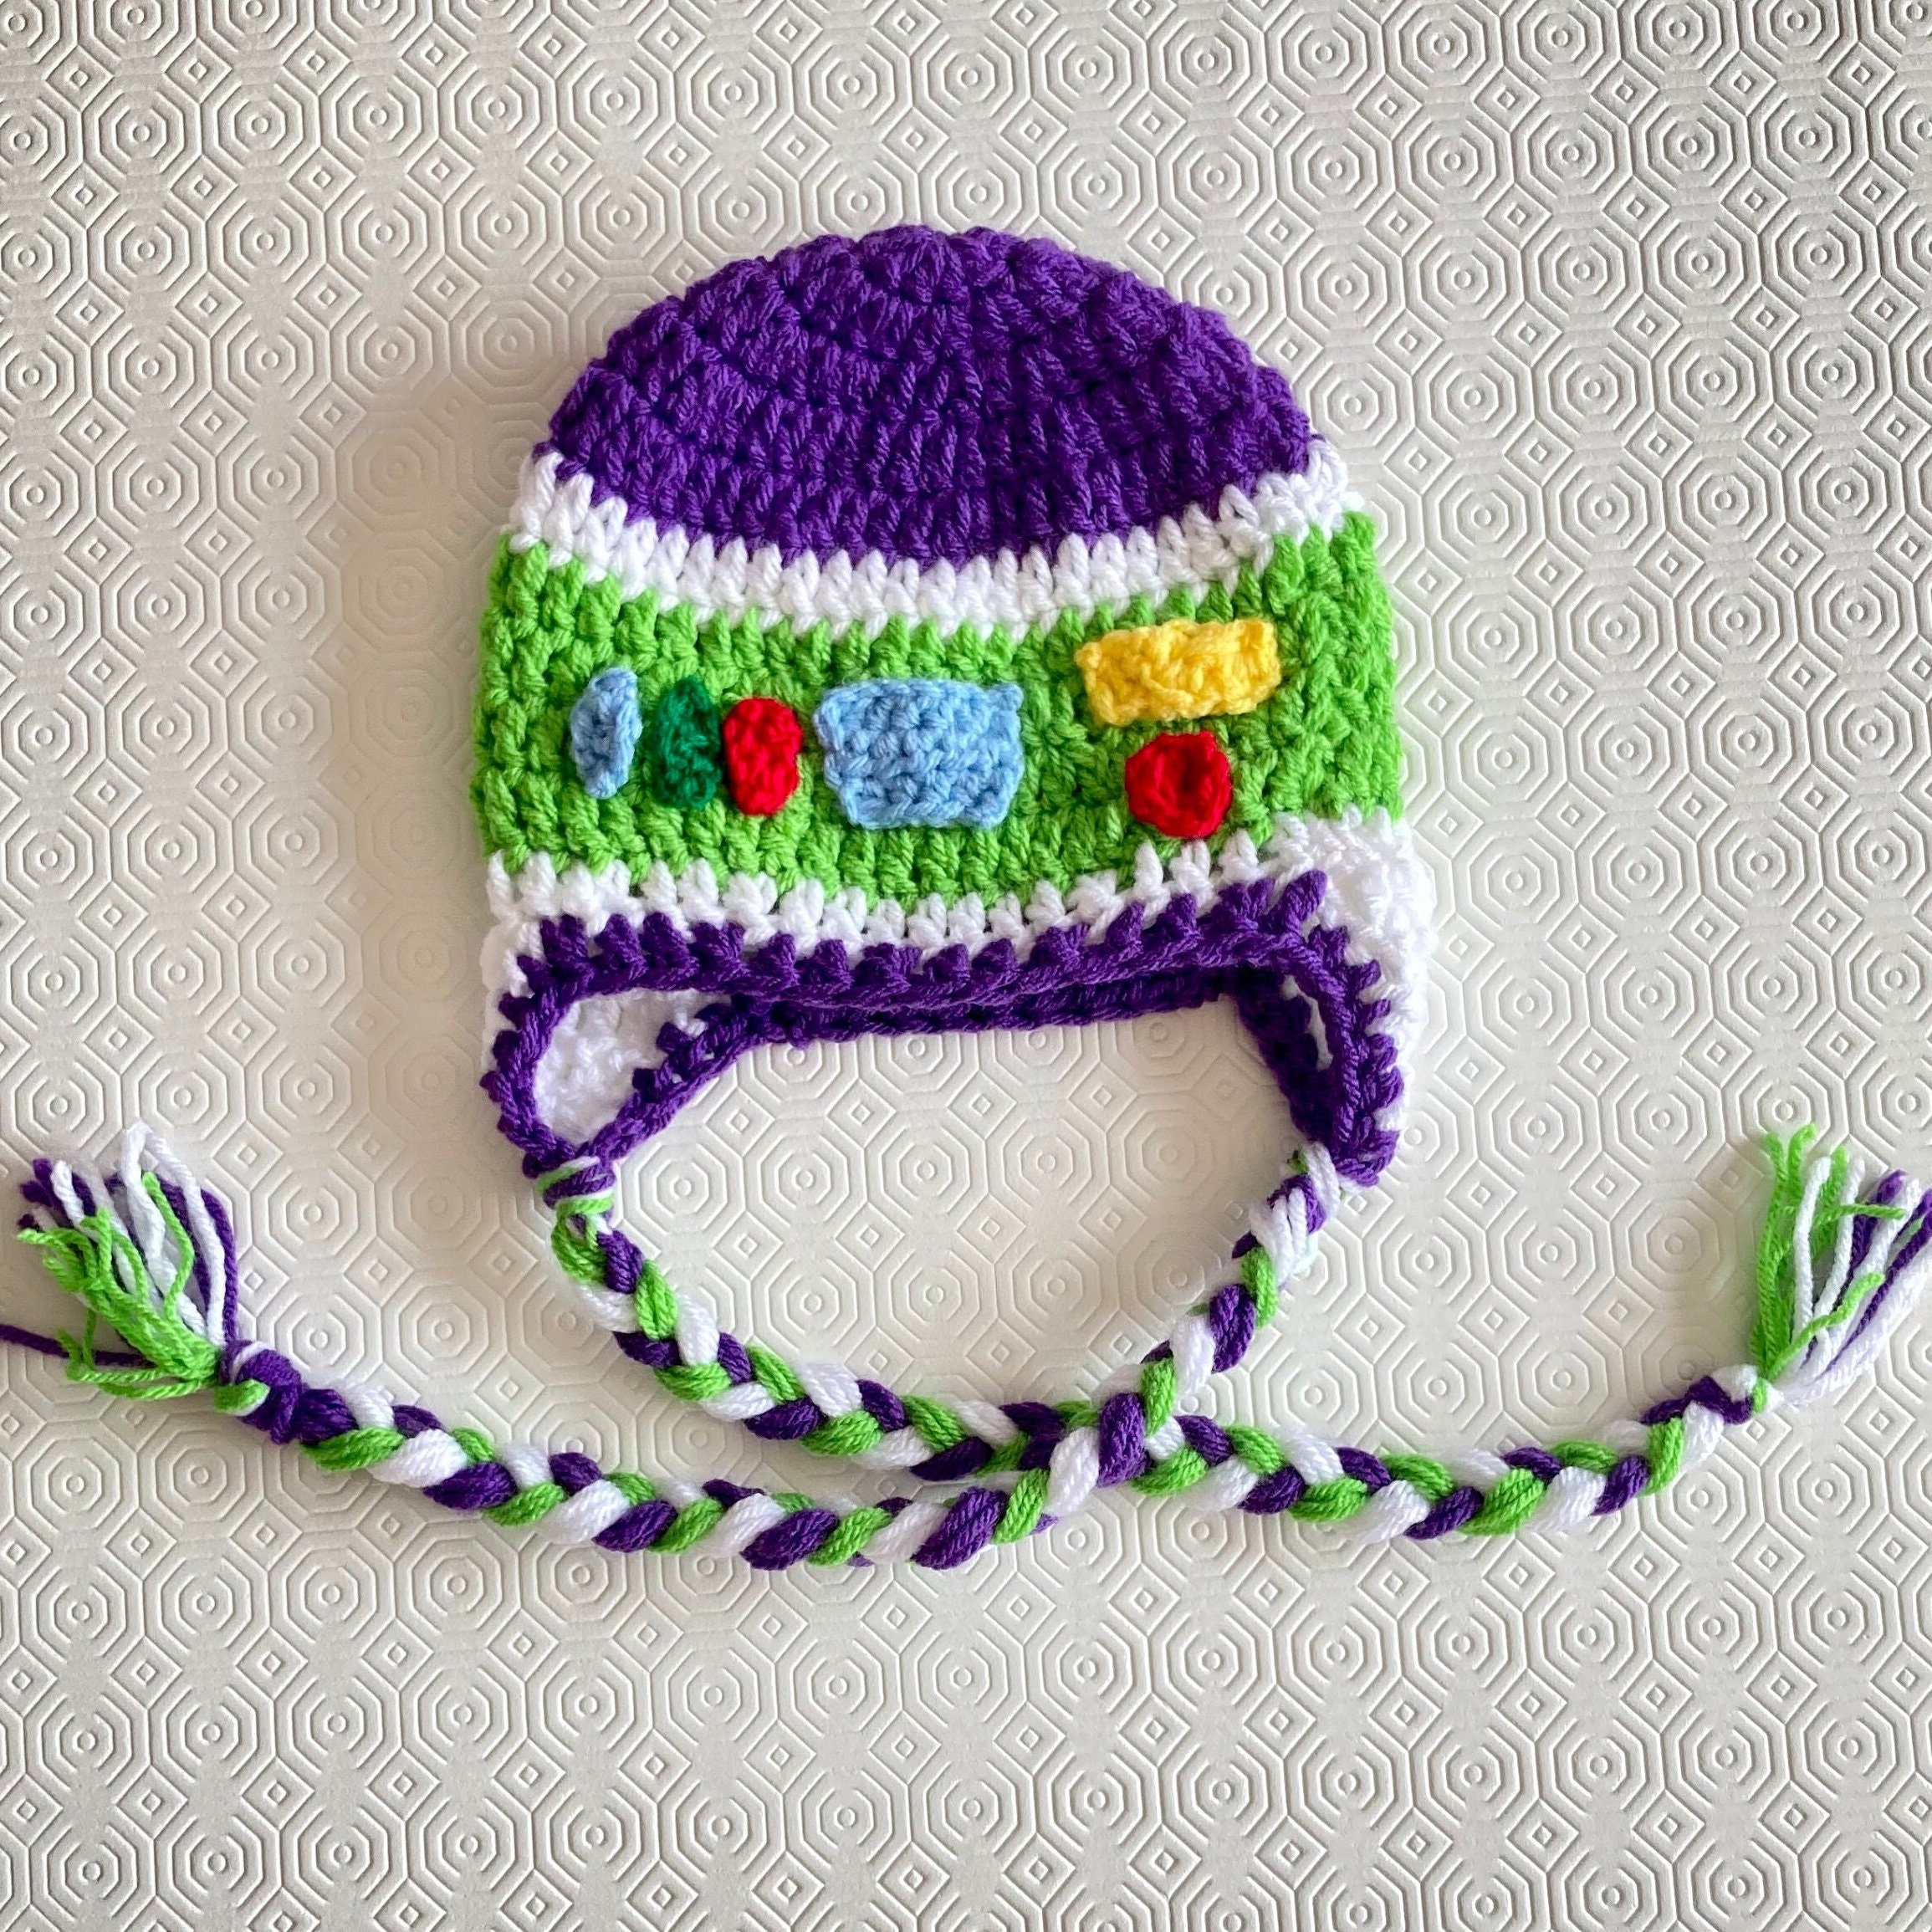 gorros minions a crochet - Buscar con Google  Minion crochet, Crochet  hats, Crochet baby hats